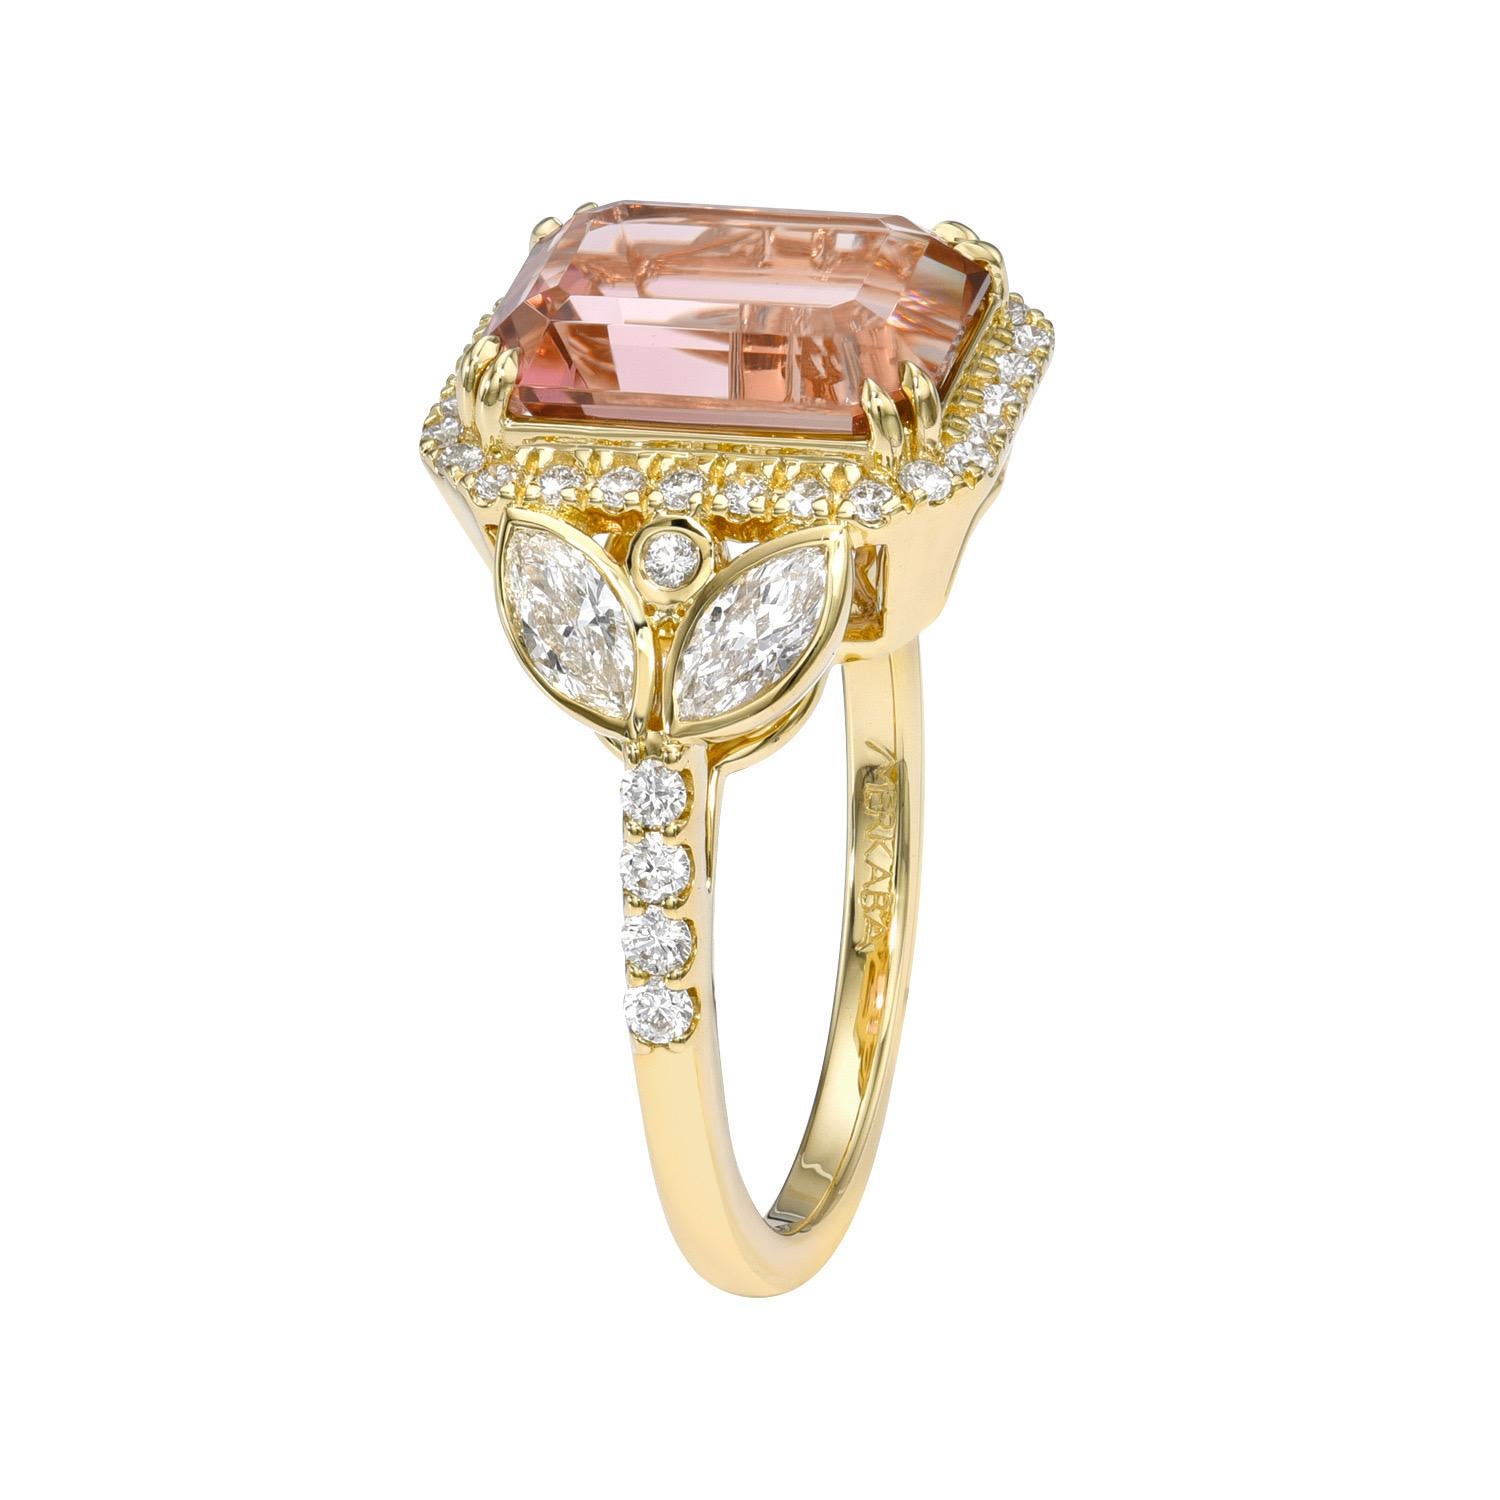 Prächtiger Ring aus 18 Karat Gelbgold mit 4,68 Karat rosa Turmalin im Smaragdschliff, verziert mit insgesamt 0,52 Karat Marquise-Diamanten und 0,38 Karat runden Brillanten.
Ring Größe 6,5. Eine Größenänderung ist auf Anfrage möglich.
Rücksendungen